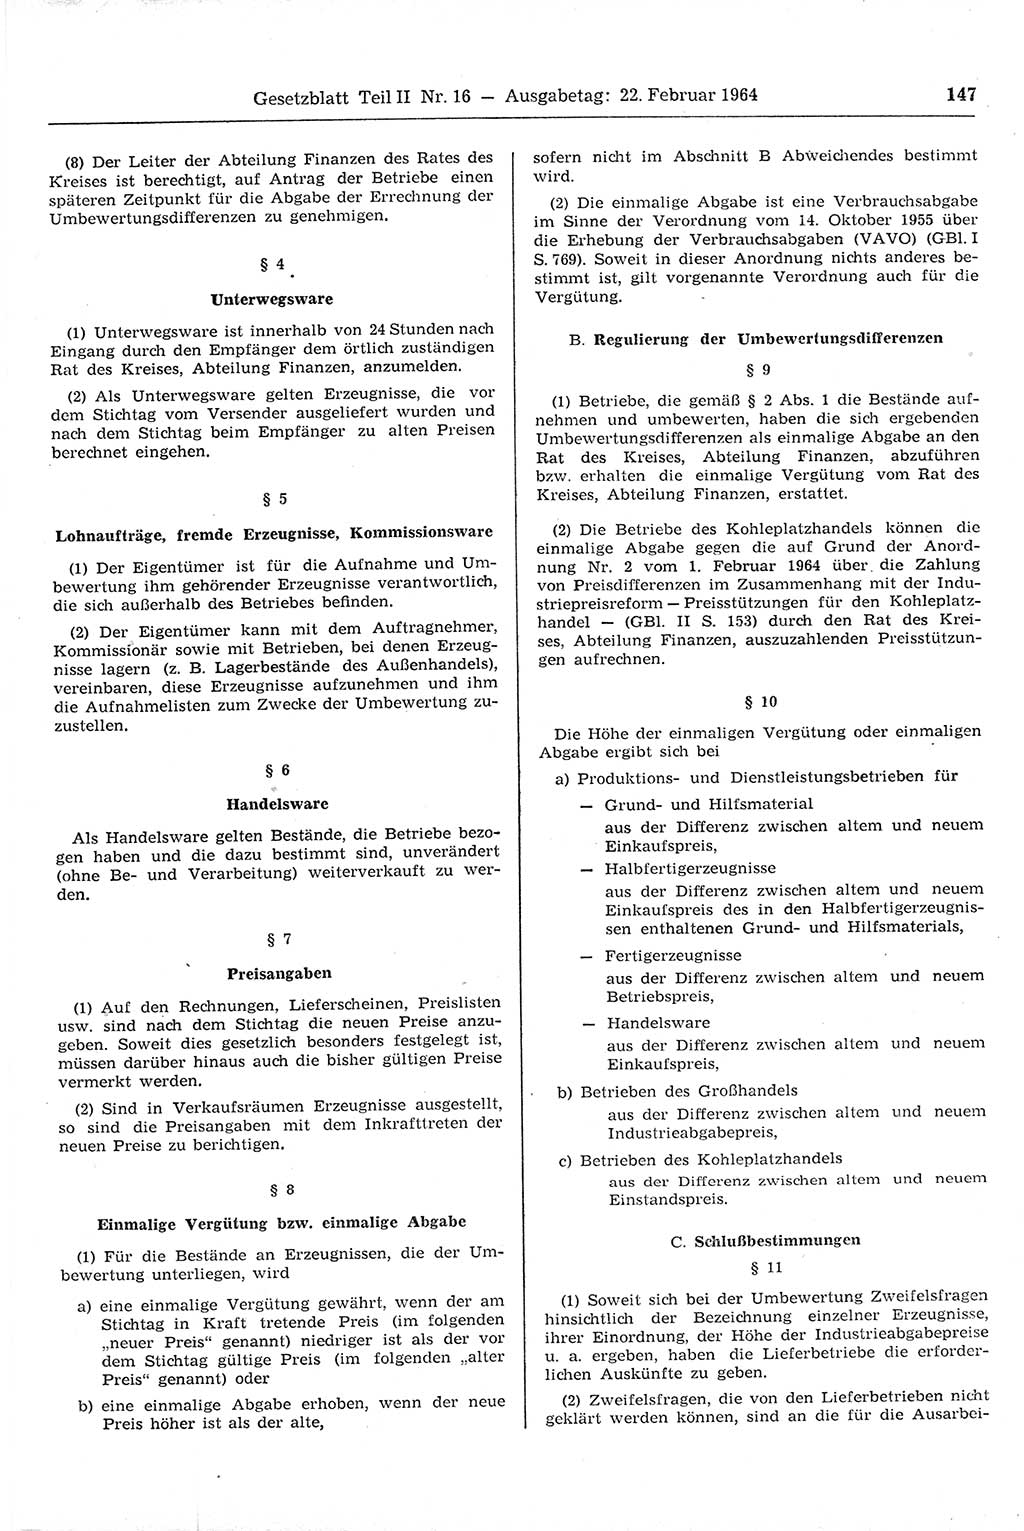 Gesetzblatt (GBl.) der Deutschen Demokratischen Republik (DDR) Teil ⅠⅠ 1964, Seite 147 (GBl. DDR ⅠⅠ 1964, S. 147)